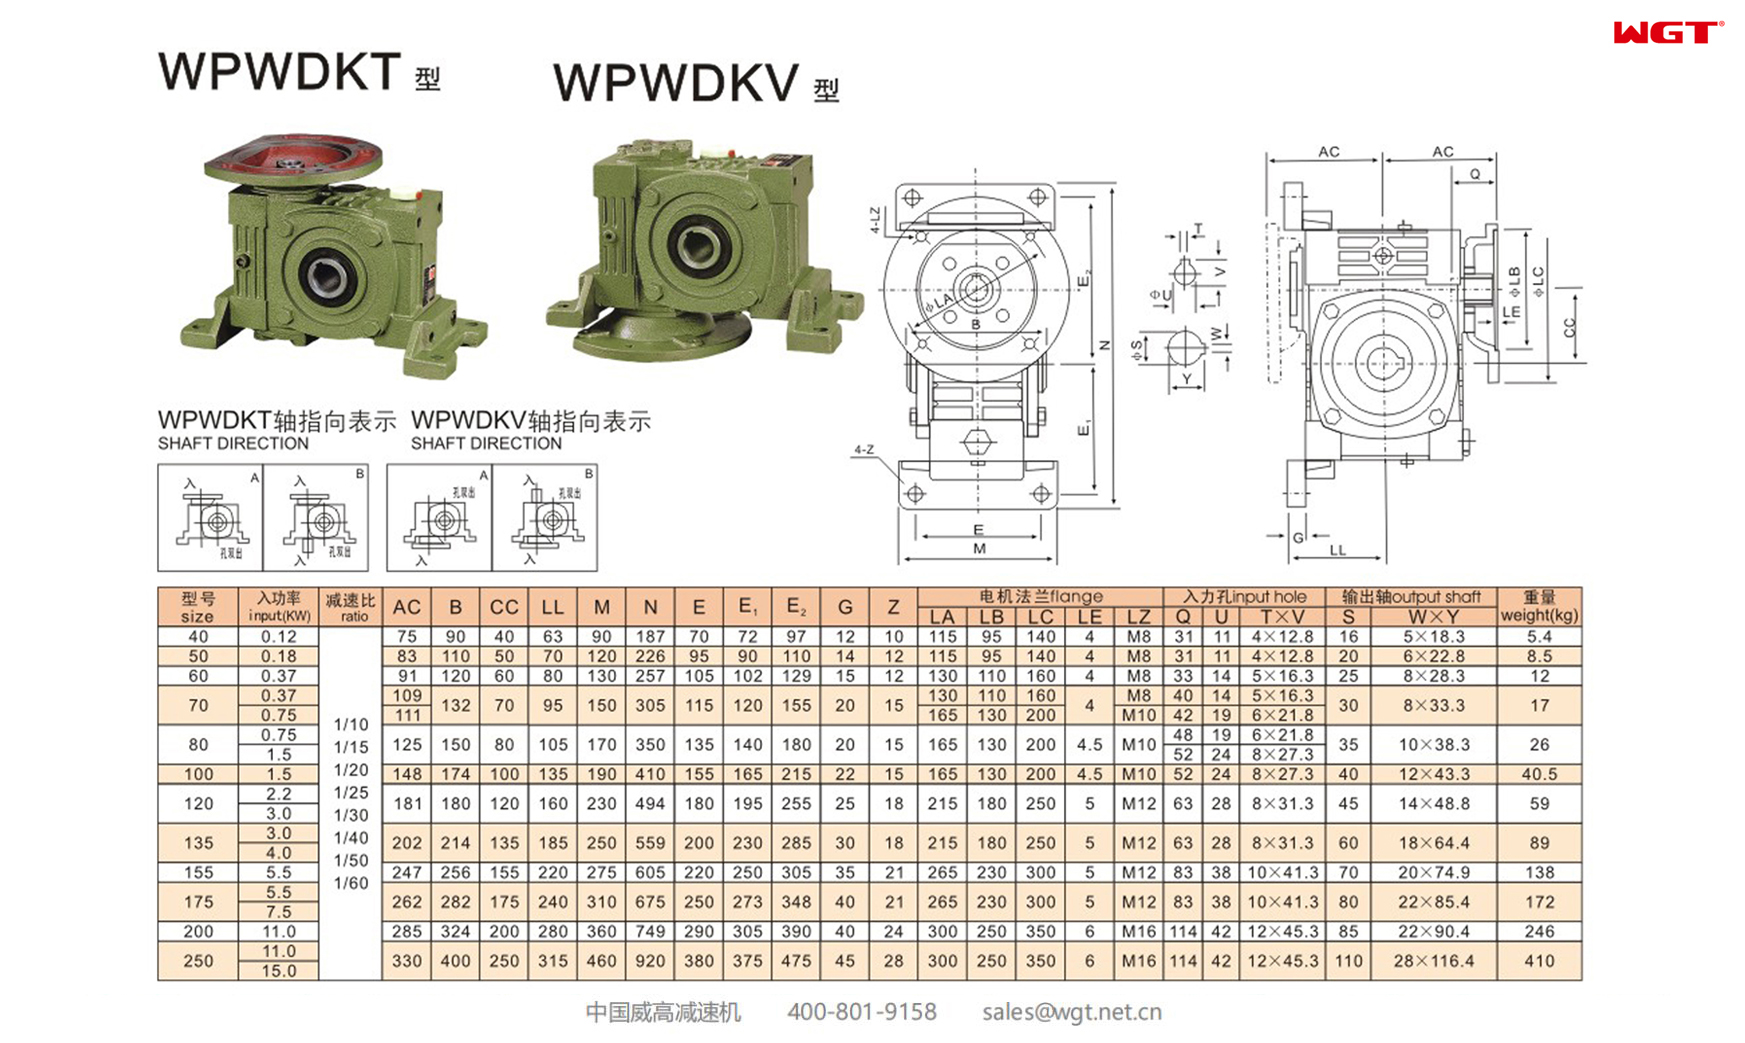 WPWDKT WPWDKV120 Worm Gear Reducer UNIVERSAL SPEED REDUCER